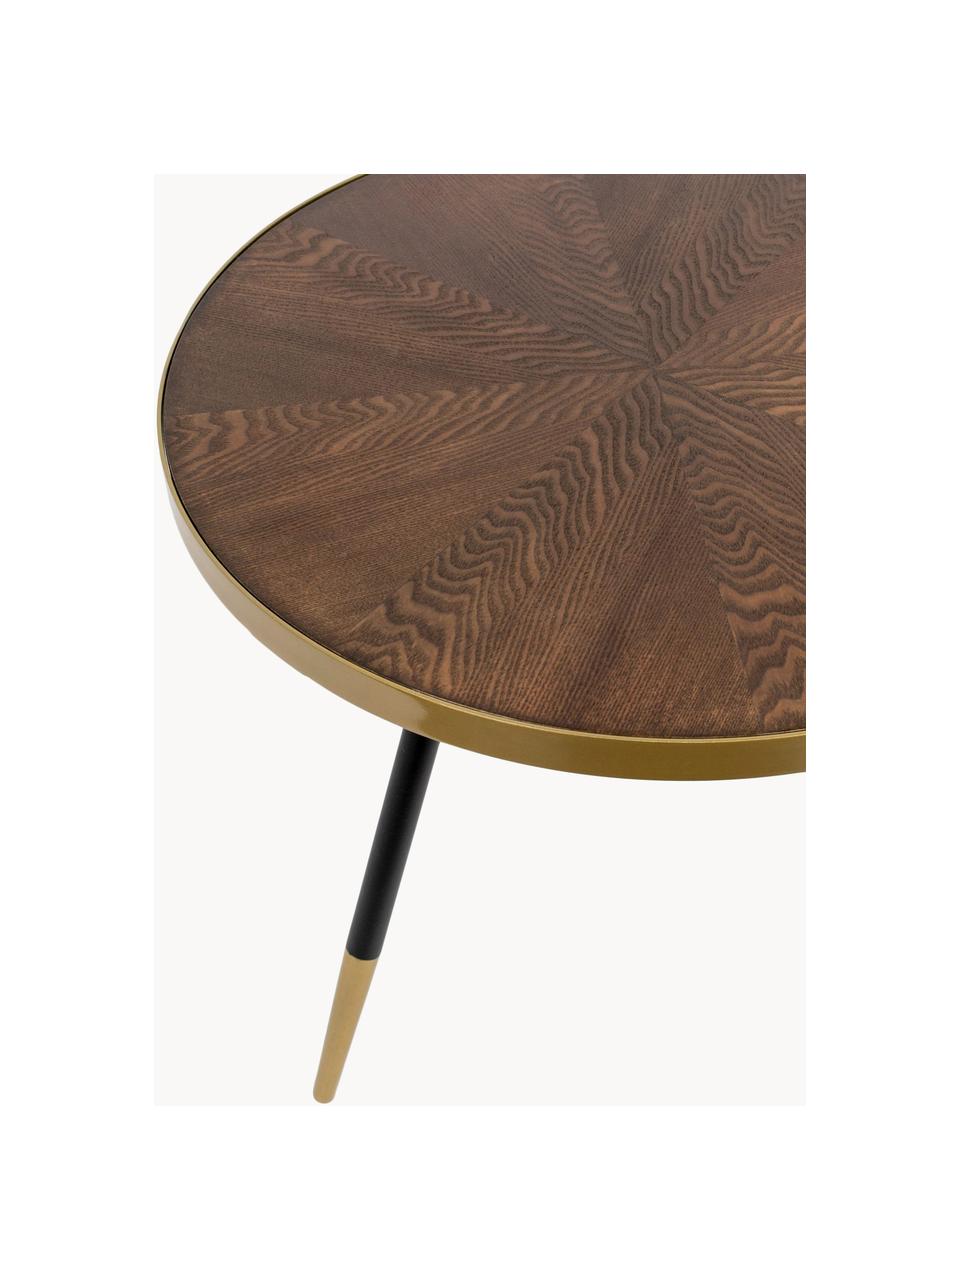 Table basse ronde en bois Denise, Bois foncé, couleur dorée, Ø 61 cm